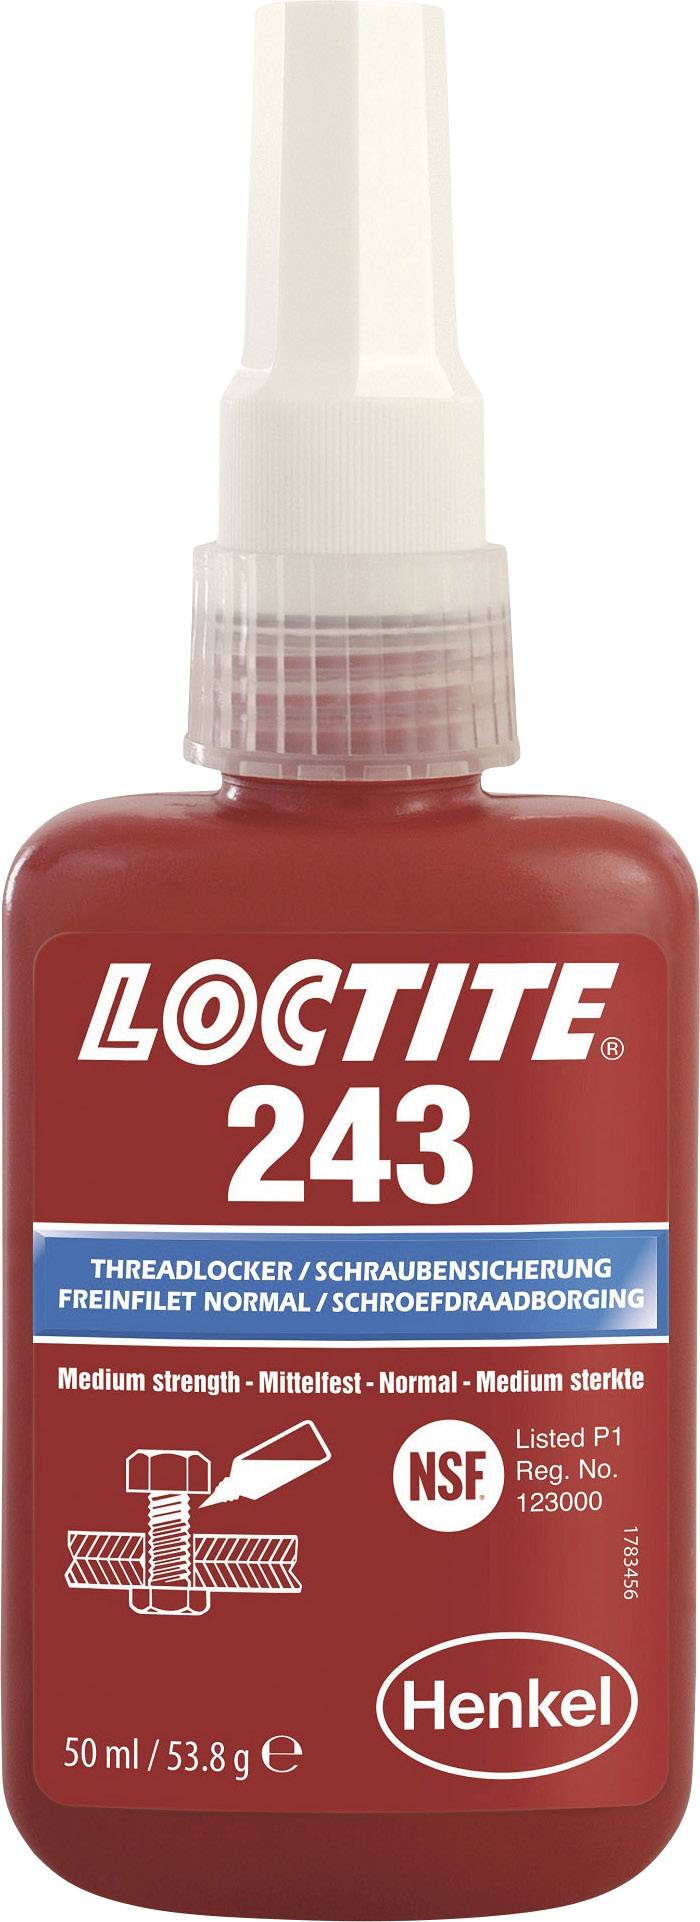 Loctite 243 Gewindesicherung 50ml Blauer Bolzenbolzen Fast Fix